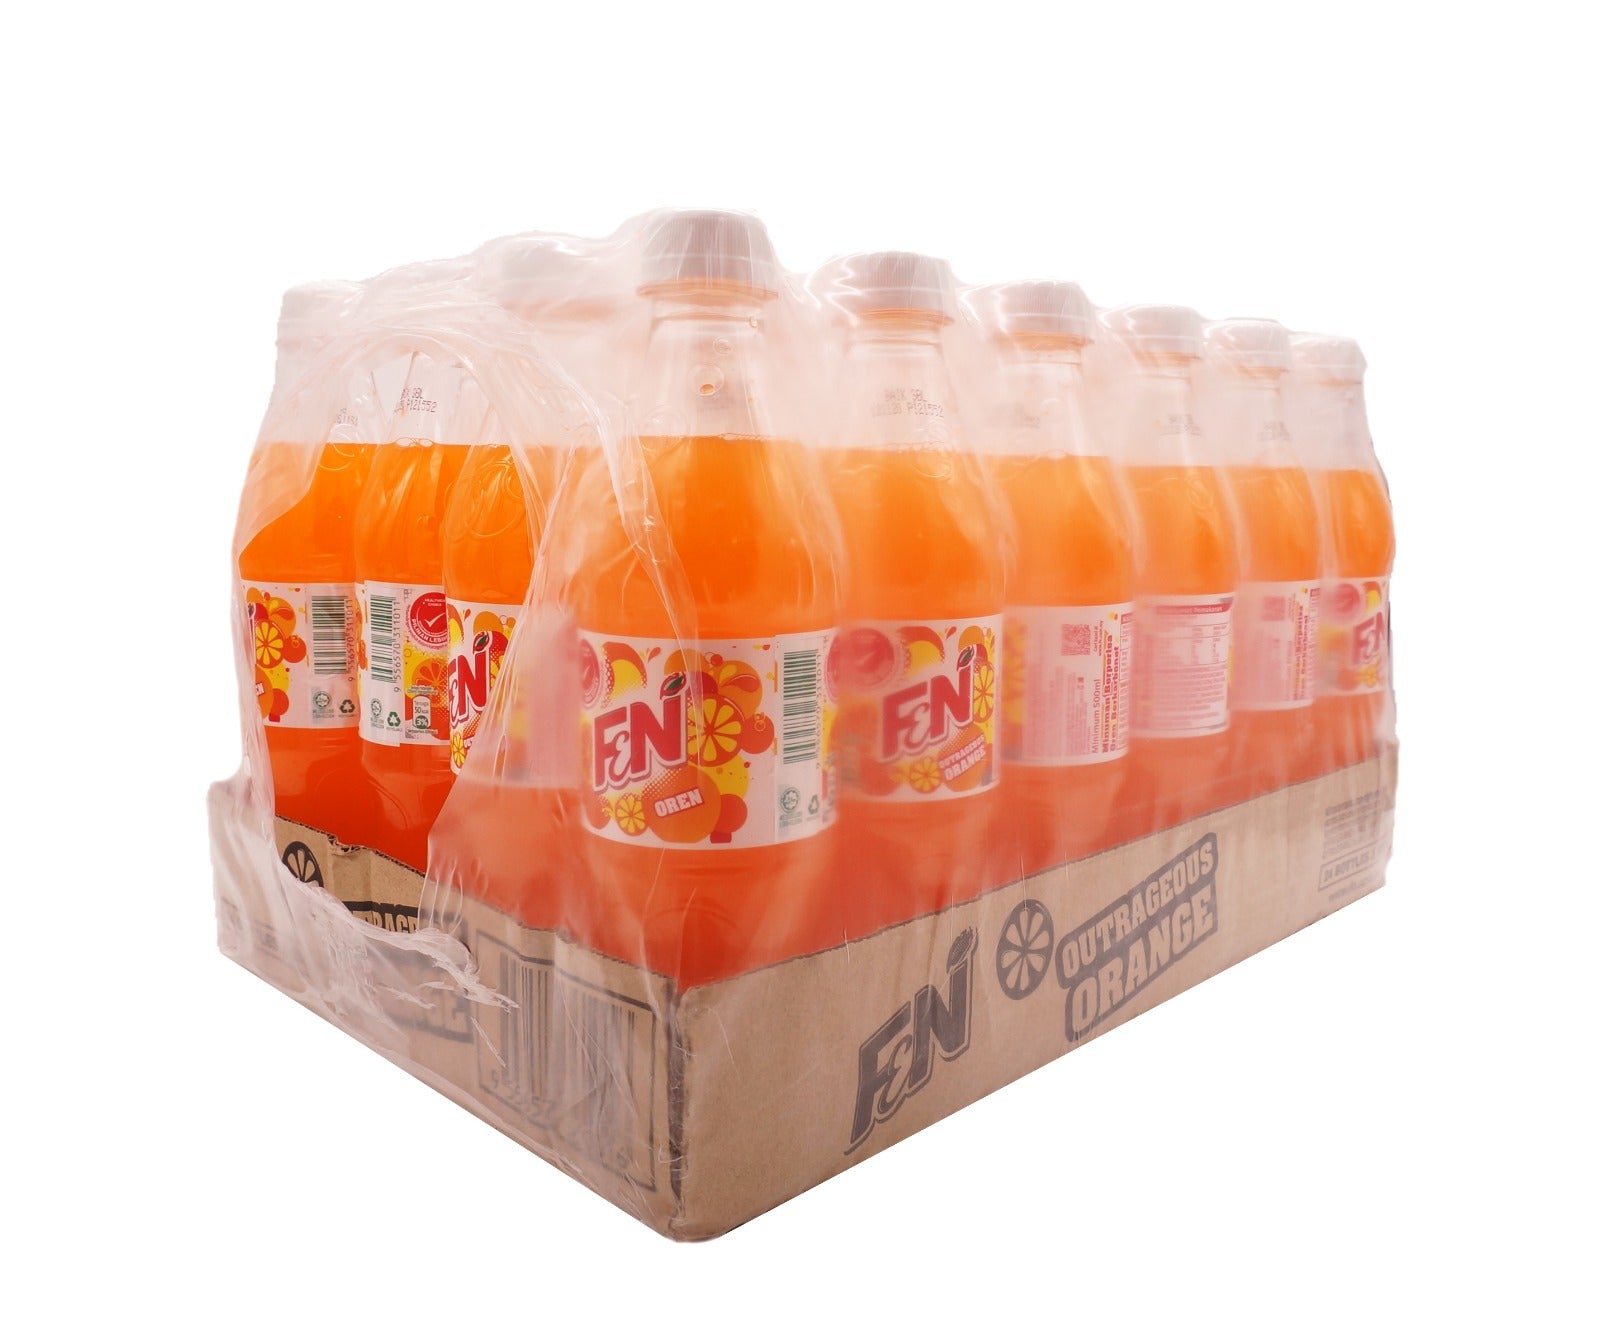 F&N Orange Bottle (24 x 500ml – Carton)